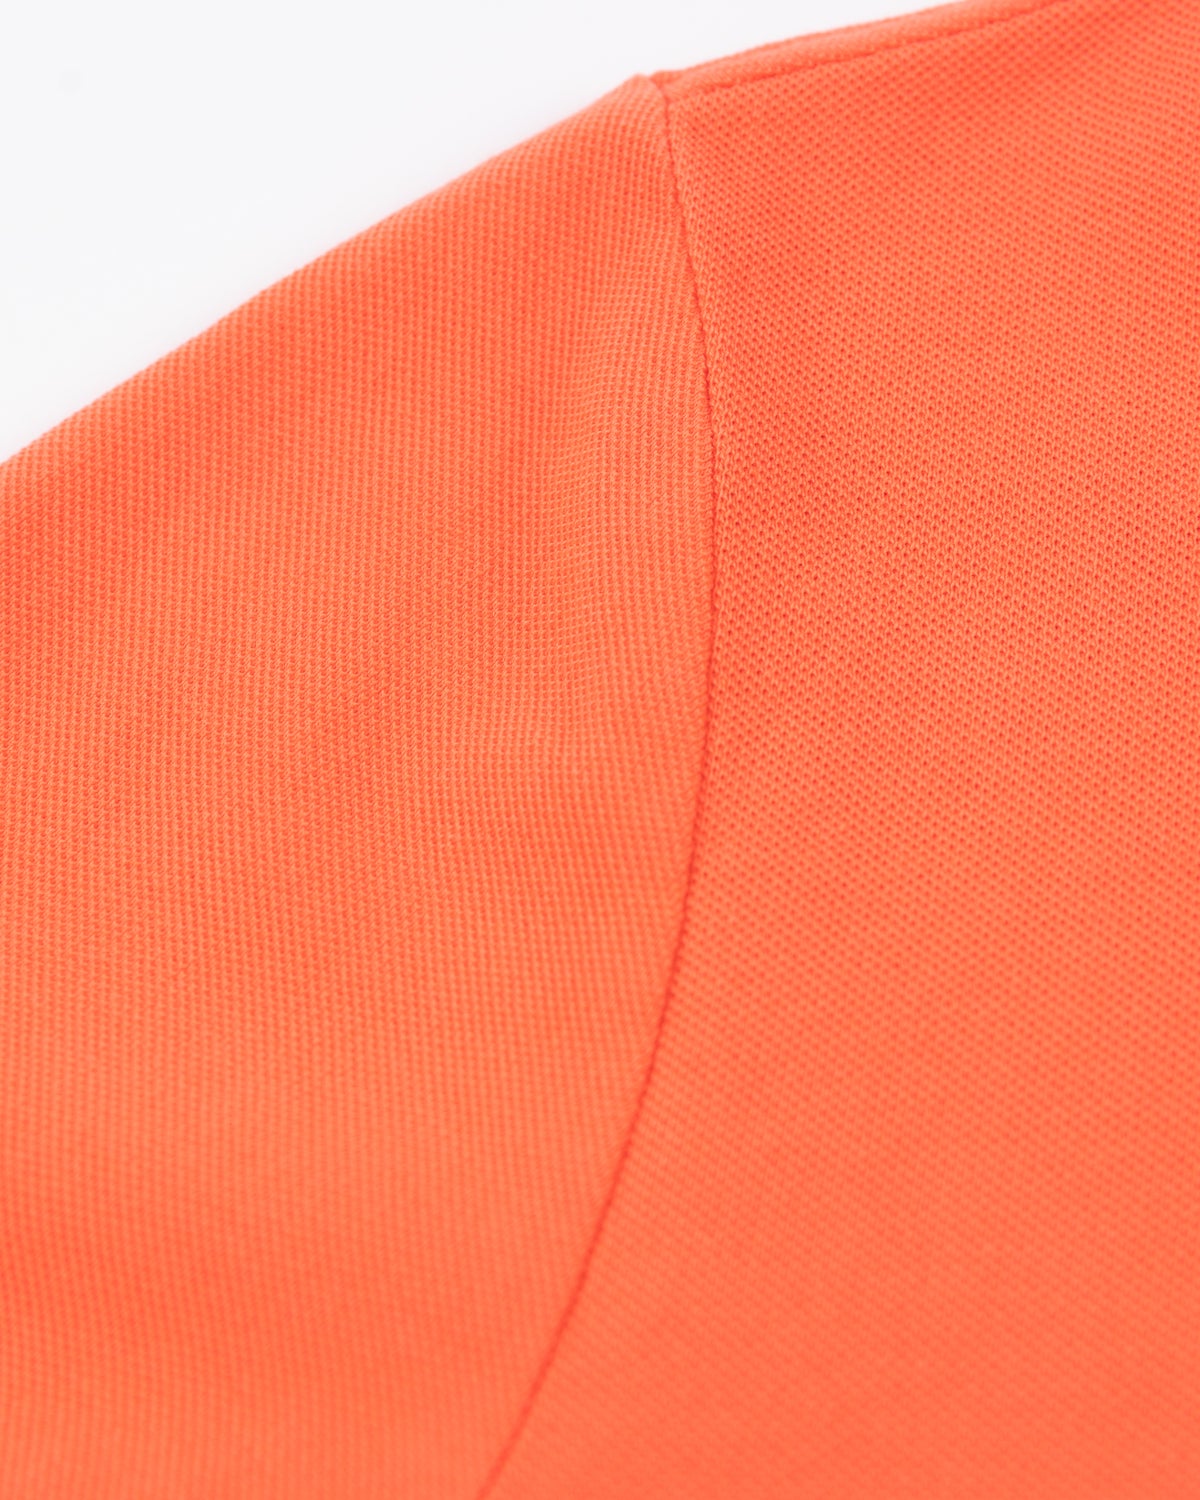 NZA Heritage polo shirt - Burned Orange